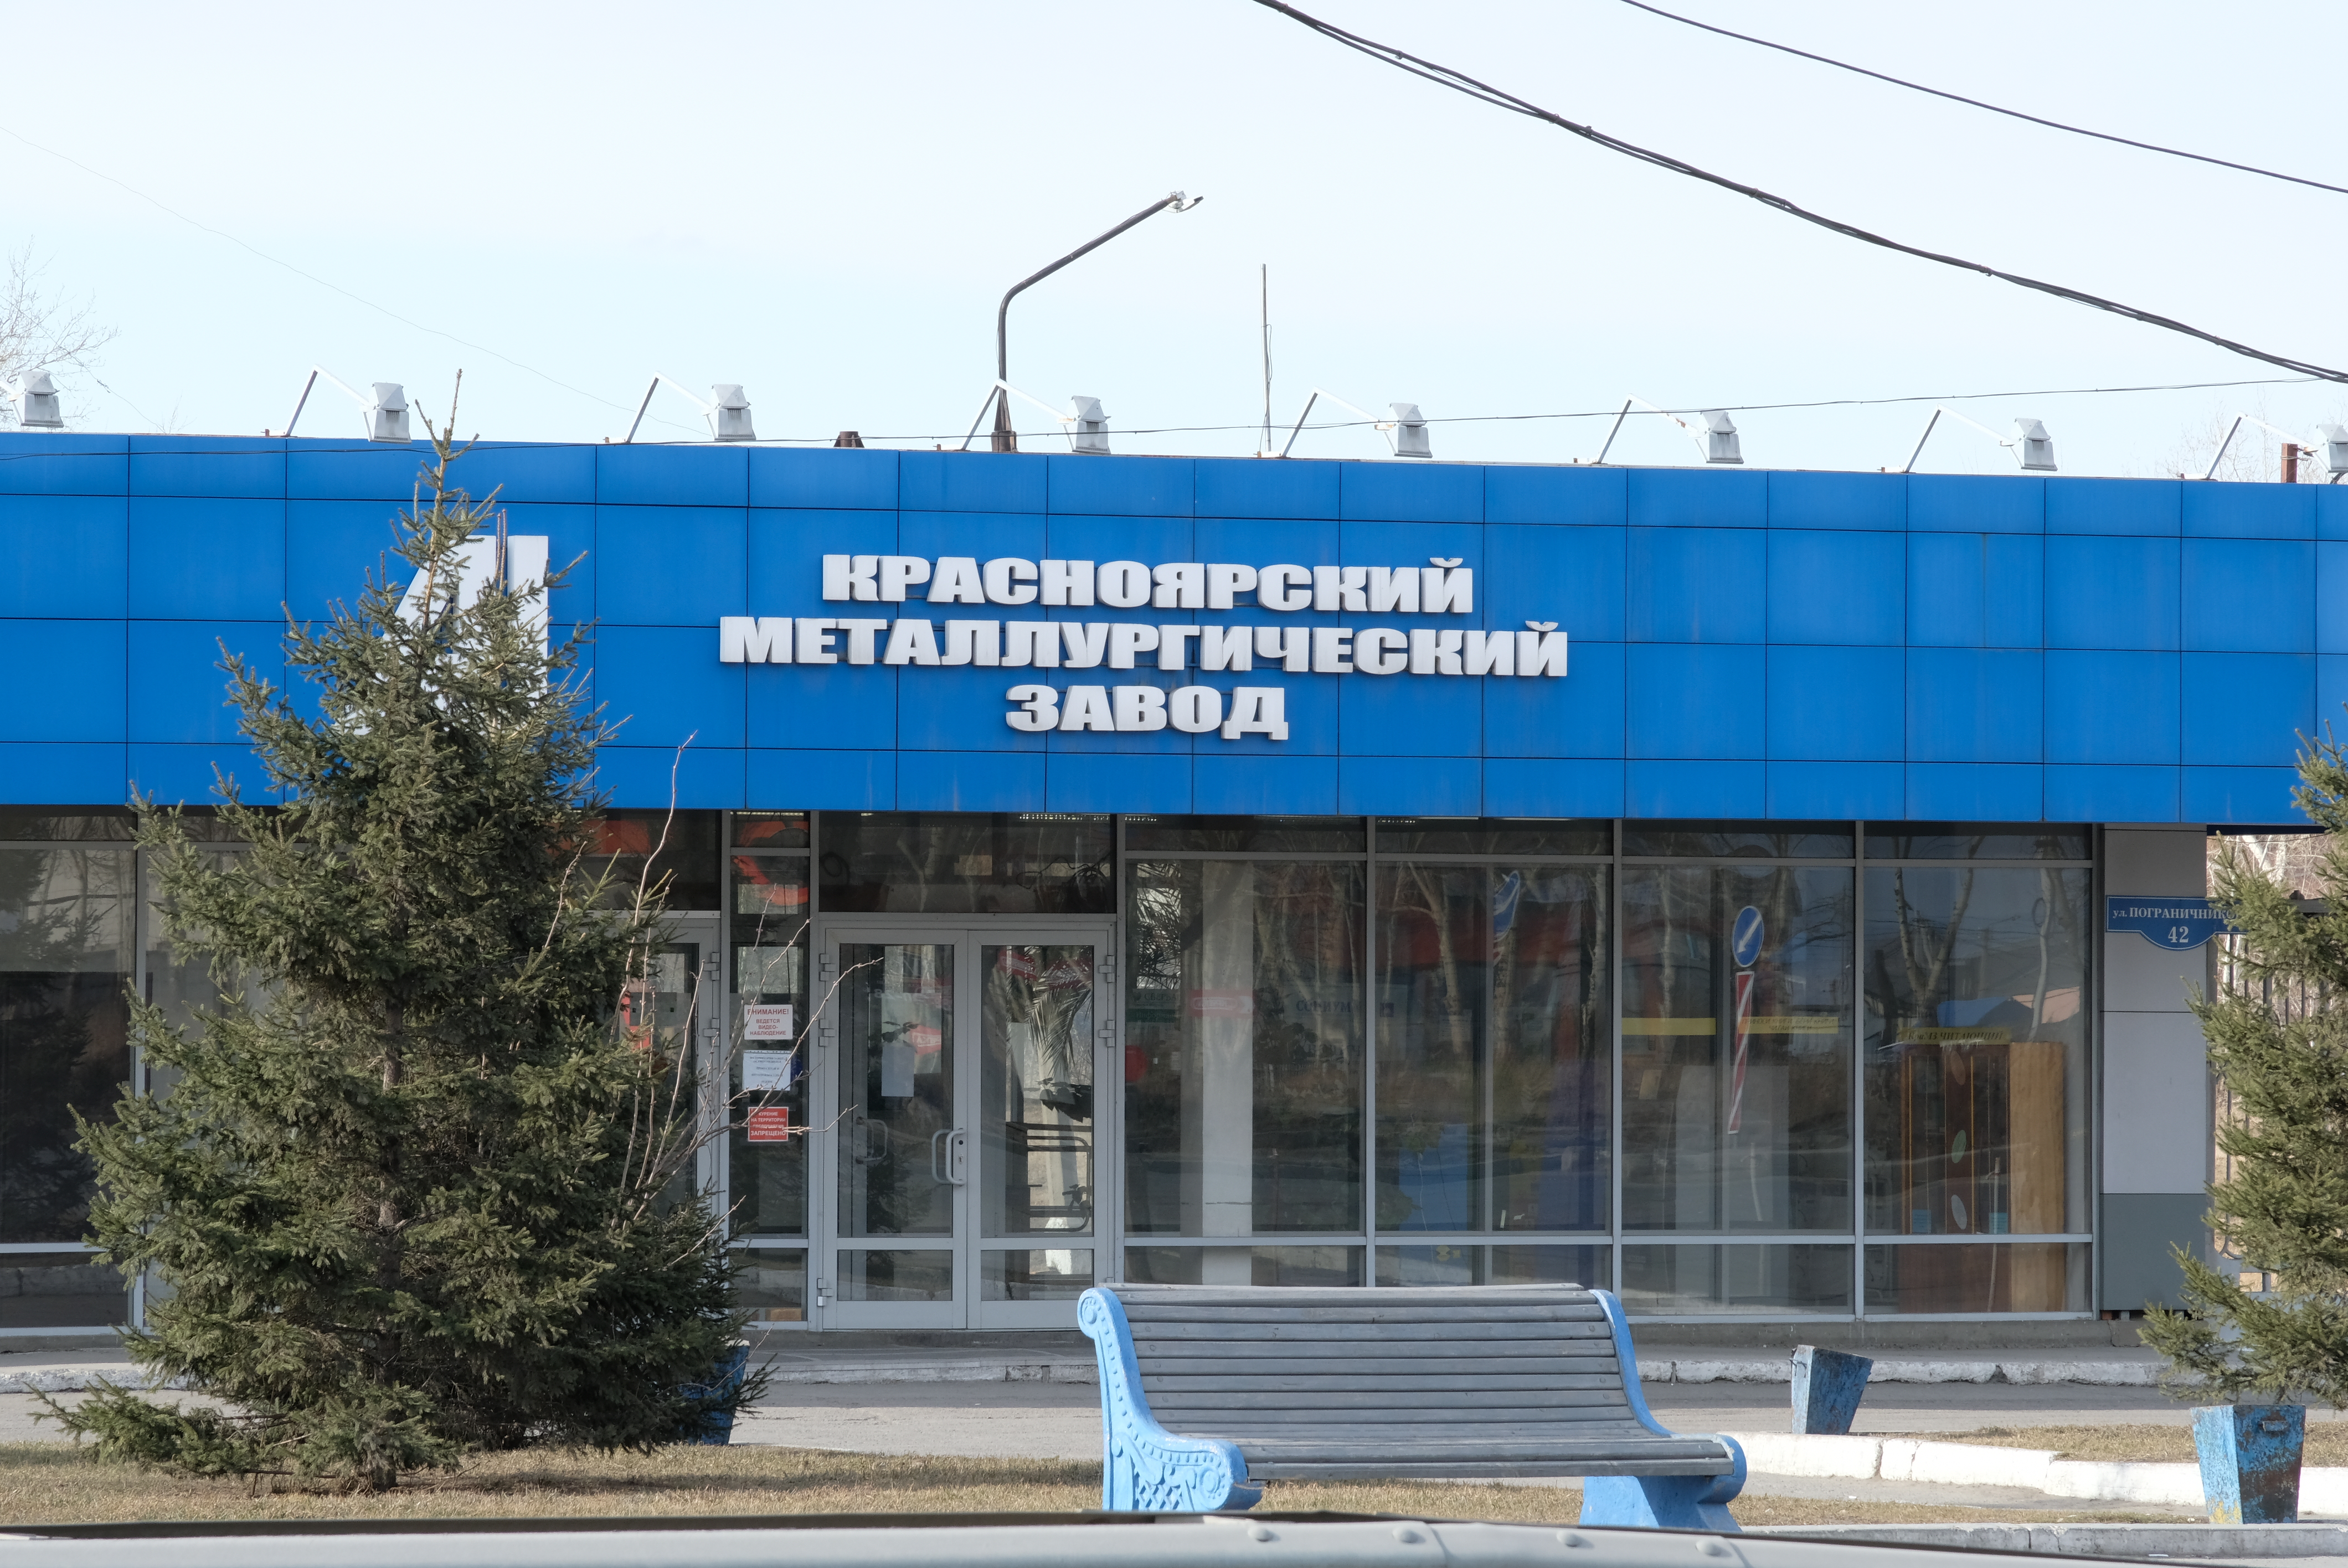 Металлургический завод Красноярск